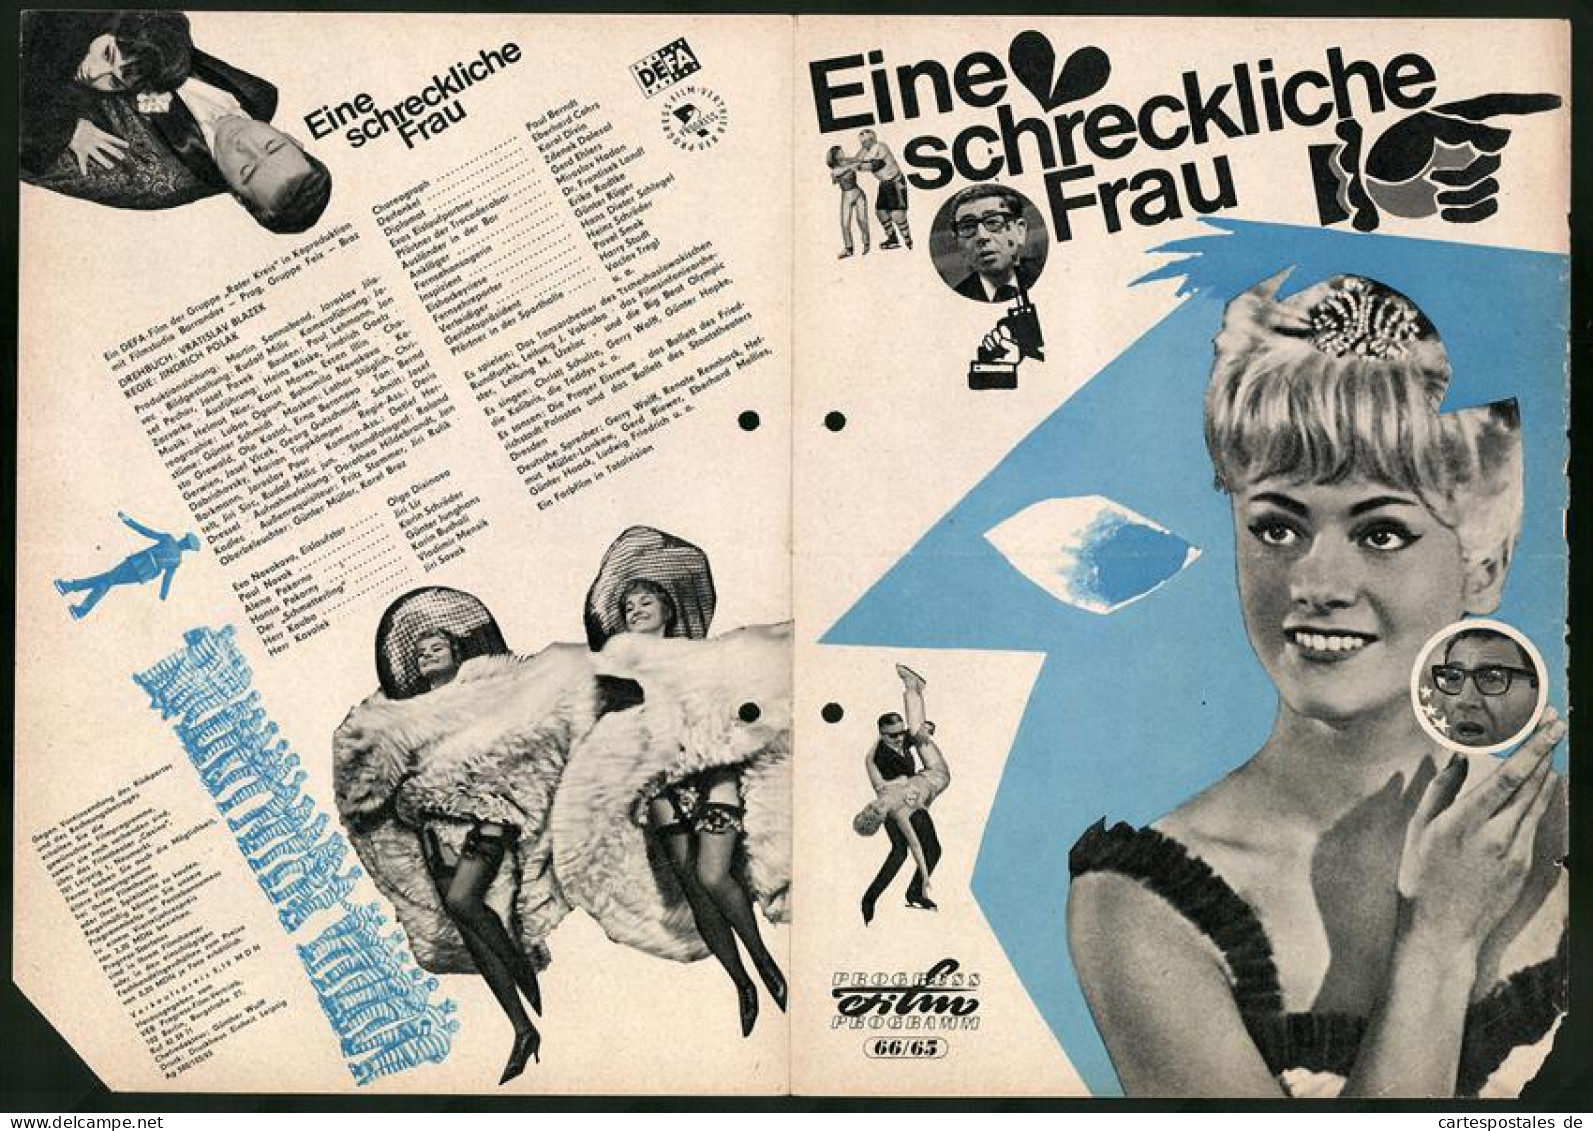 Filmprogramm PFP Nr. 66 /65, Eine Schreckliche Frau, Paul Berndt, Eberhard Cohrs, Regie: Jindrich Polak  - Zeitschriften